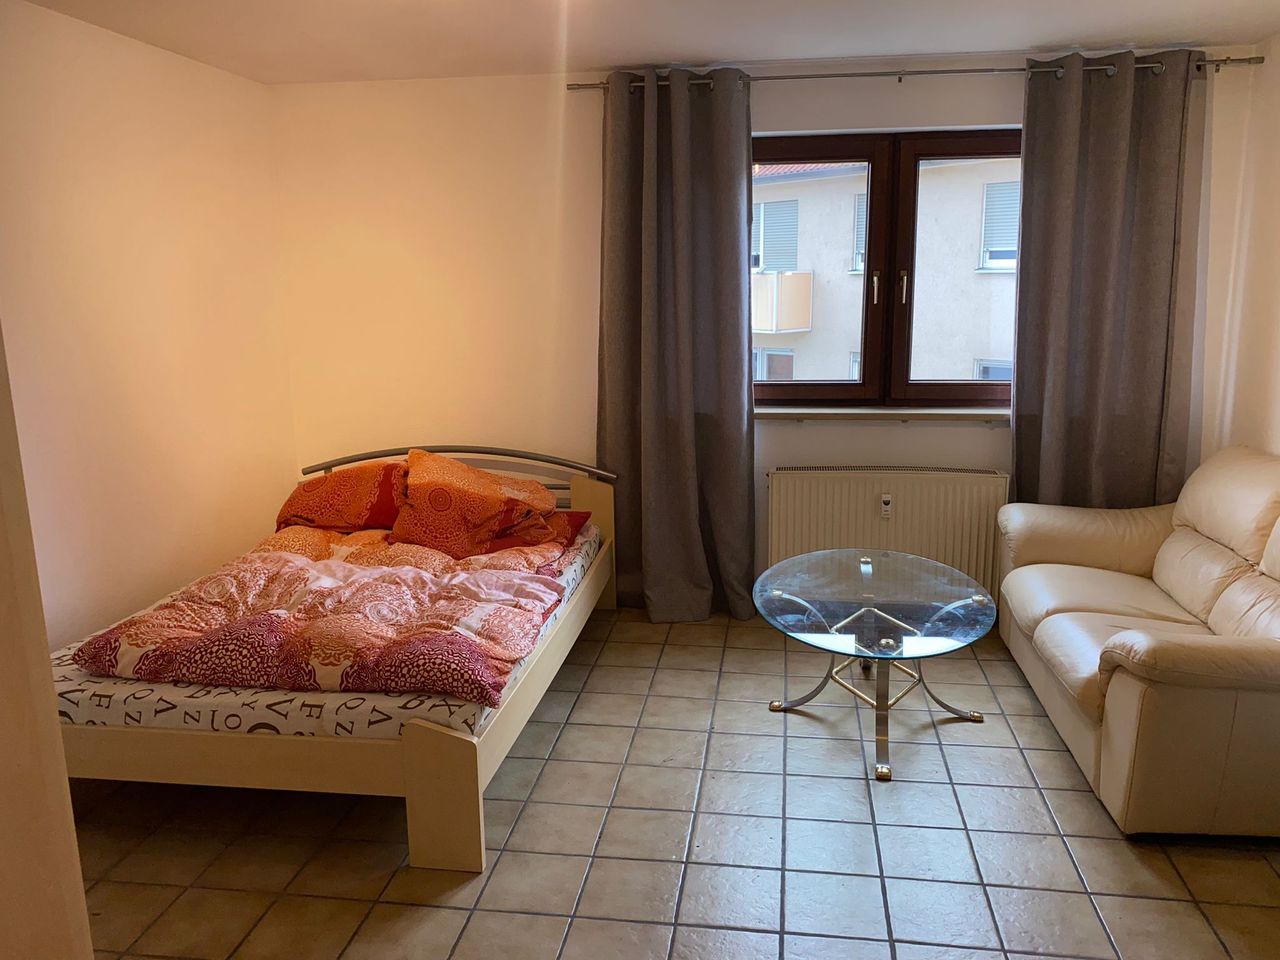 Furnished room for rent in Nürnberg Wöhrd